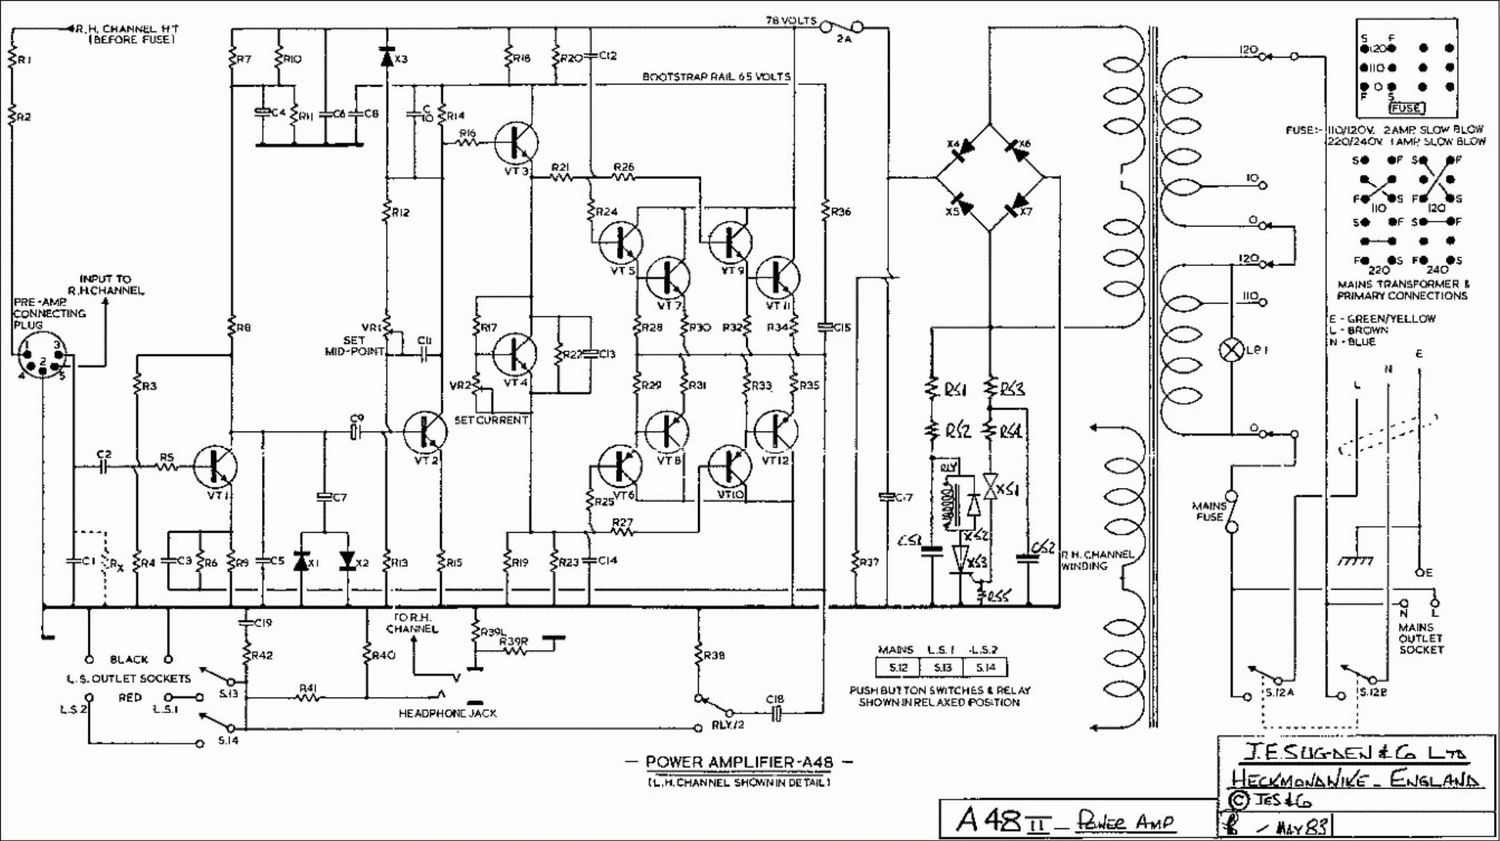 Sugden A48 schematic pwramp